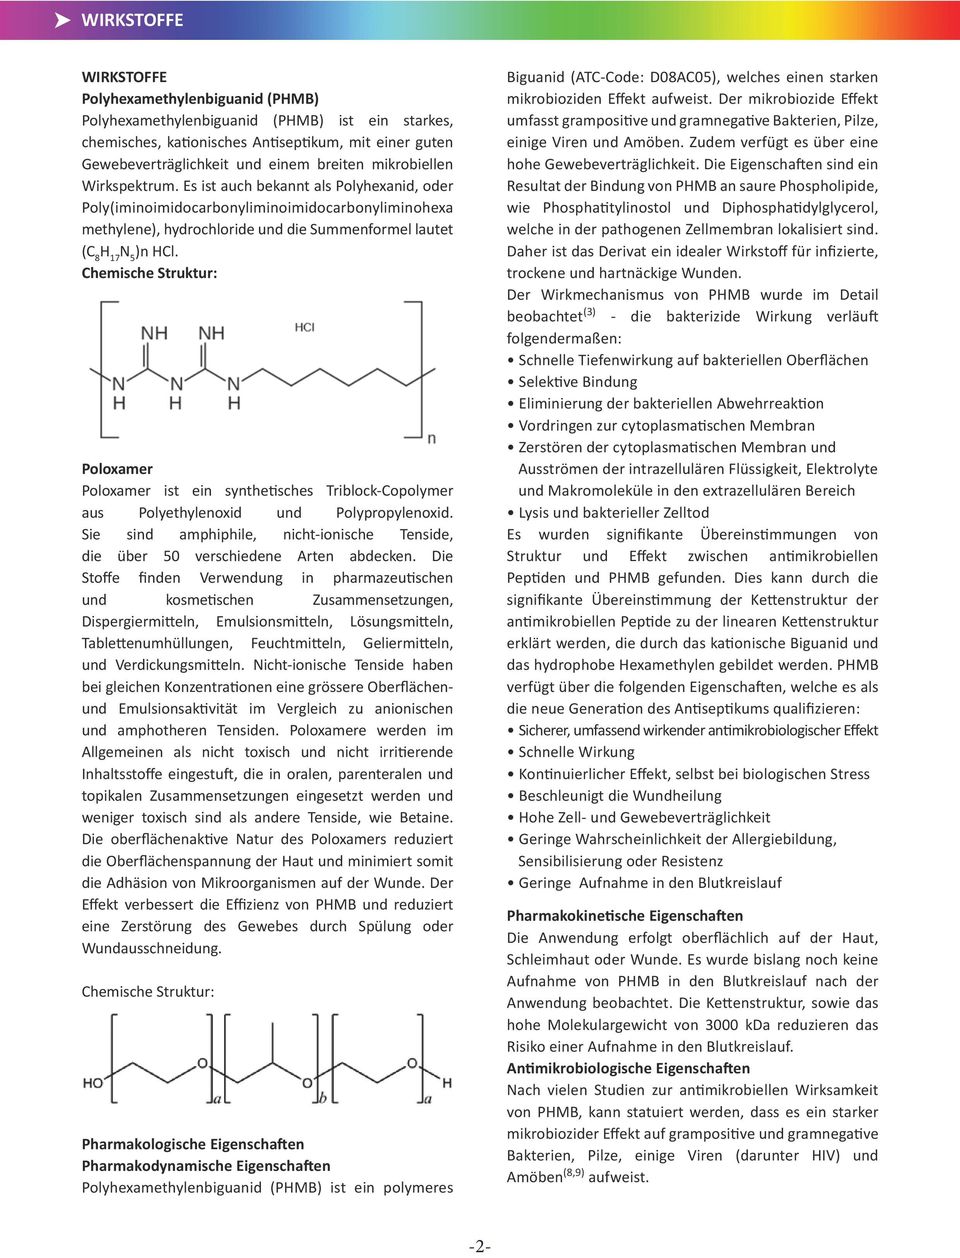 Chemische Struktur: Poloxamer Poloxamer ist ein synthetisches Triblock-Copolymer aus Polyethylenoxid und Polypropylenoxid.